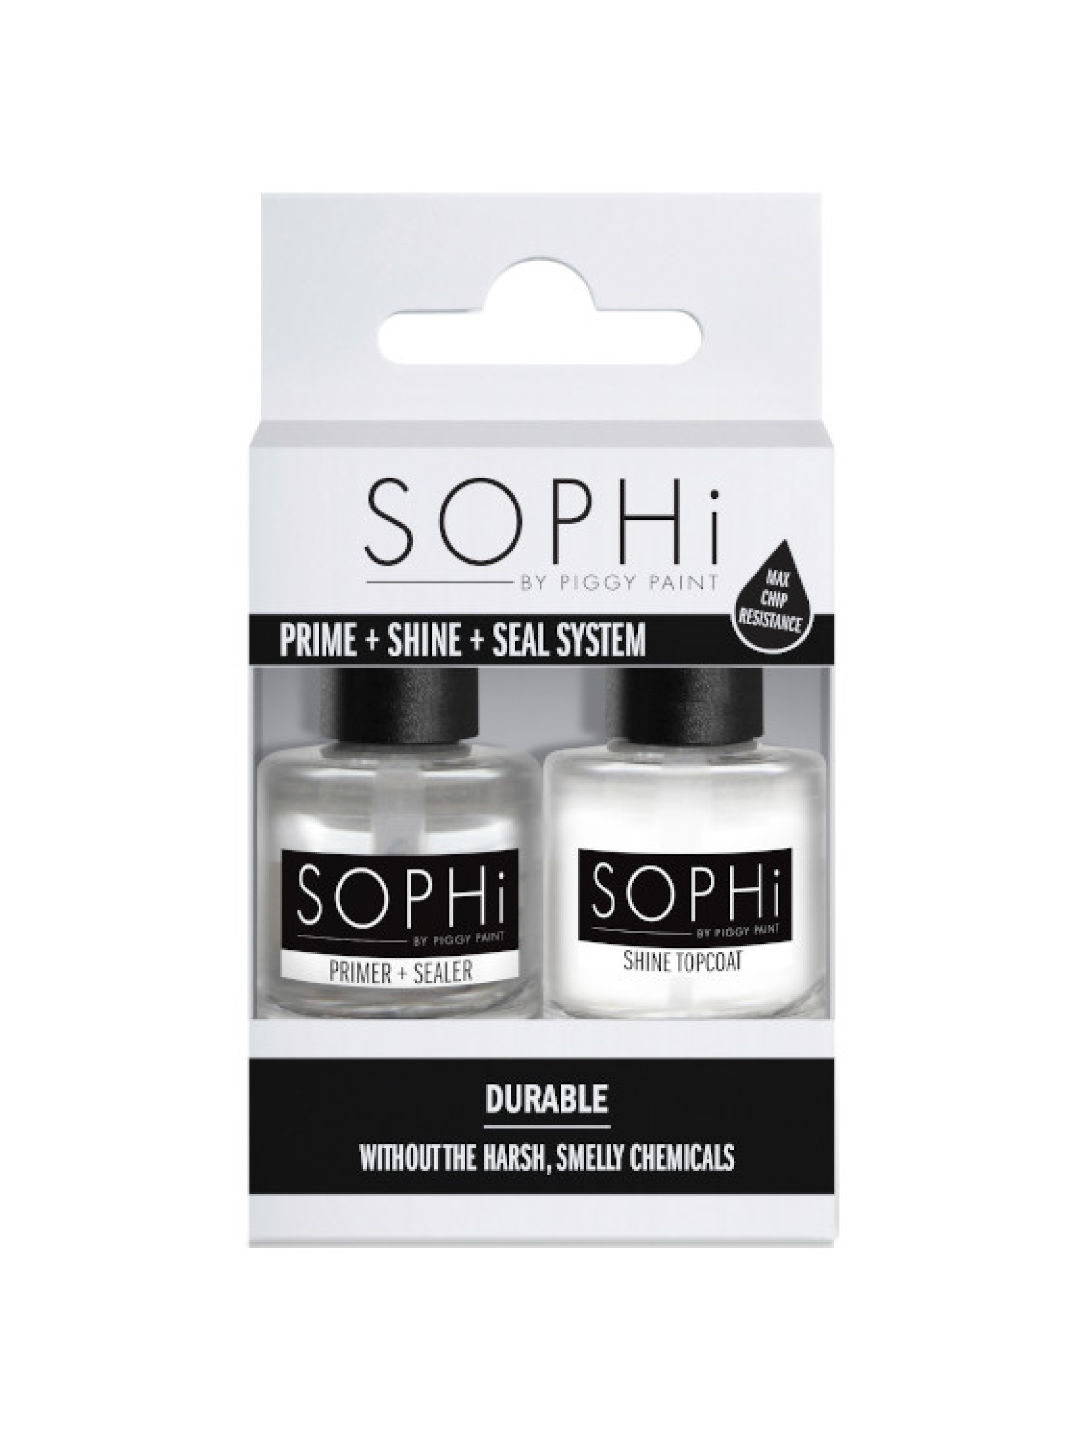 SOPHi Prime + Shine + Seal System